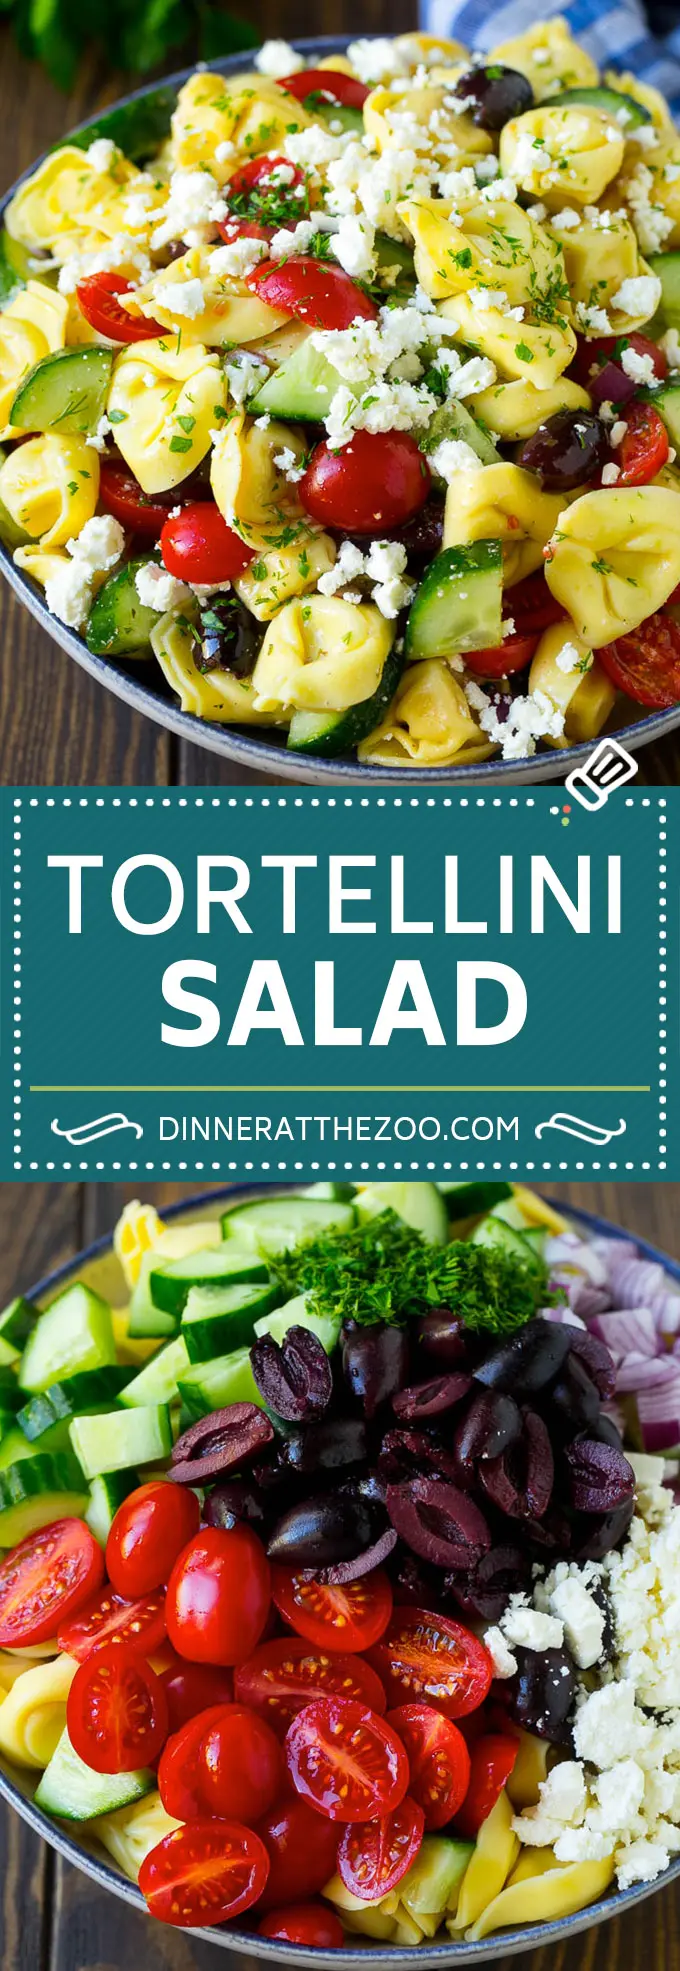 ギリシャ風トルテリーニサラダのレシピ｜パスタサラダ｜トルテリーニサラダ｜ギリシャ風サラダ #greek #tortellini #pasta #salad #cucumbers #olives #dinner #dinneratthezoo